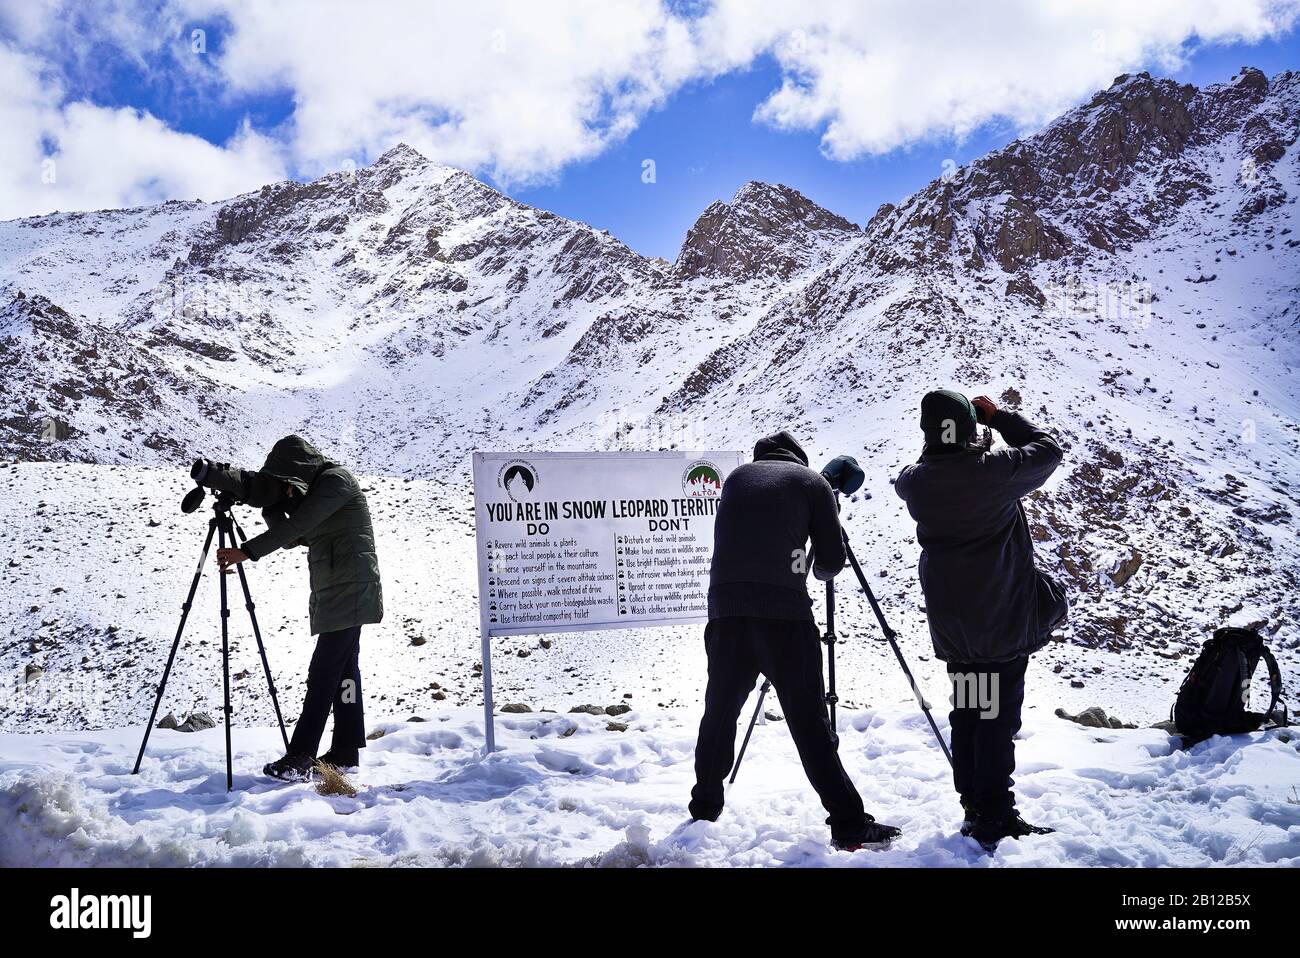 Touristische Expedition auf der Suche nach Schneeleoparden im Ulley Valley. Ladakh. Himalaya. Indien Stockfoto